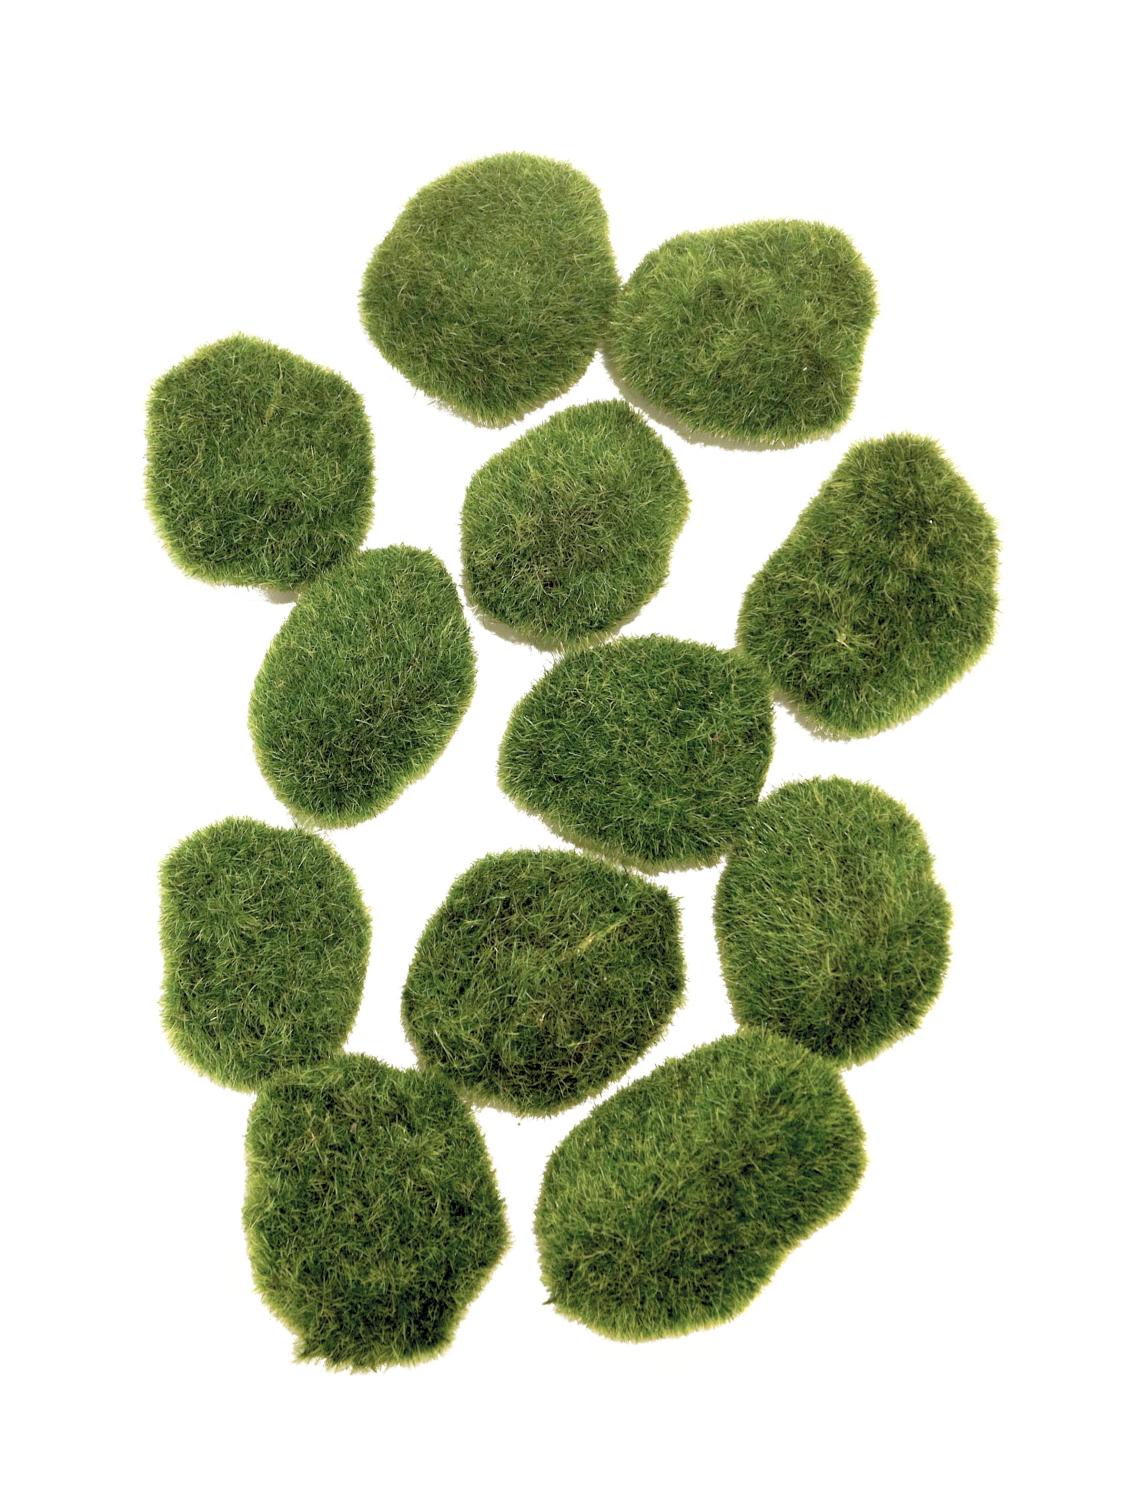 Künstliche Moos Steine LILUDA, 12 Stück, grün, 9cm